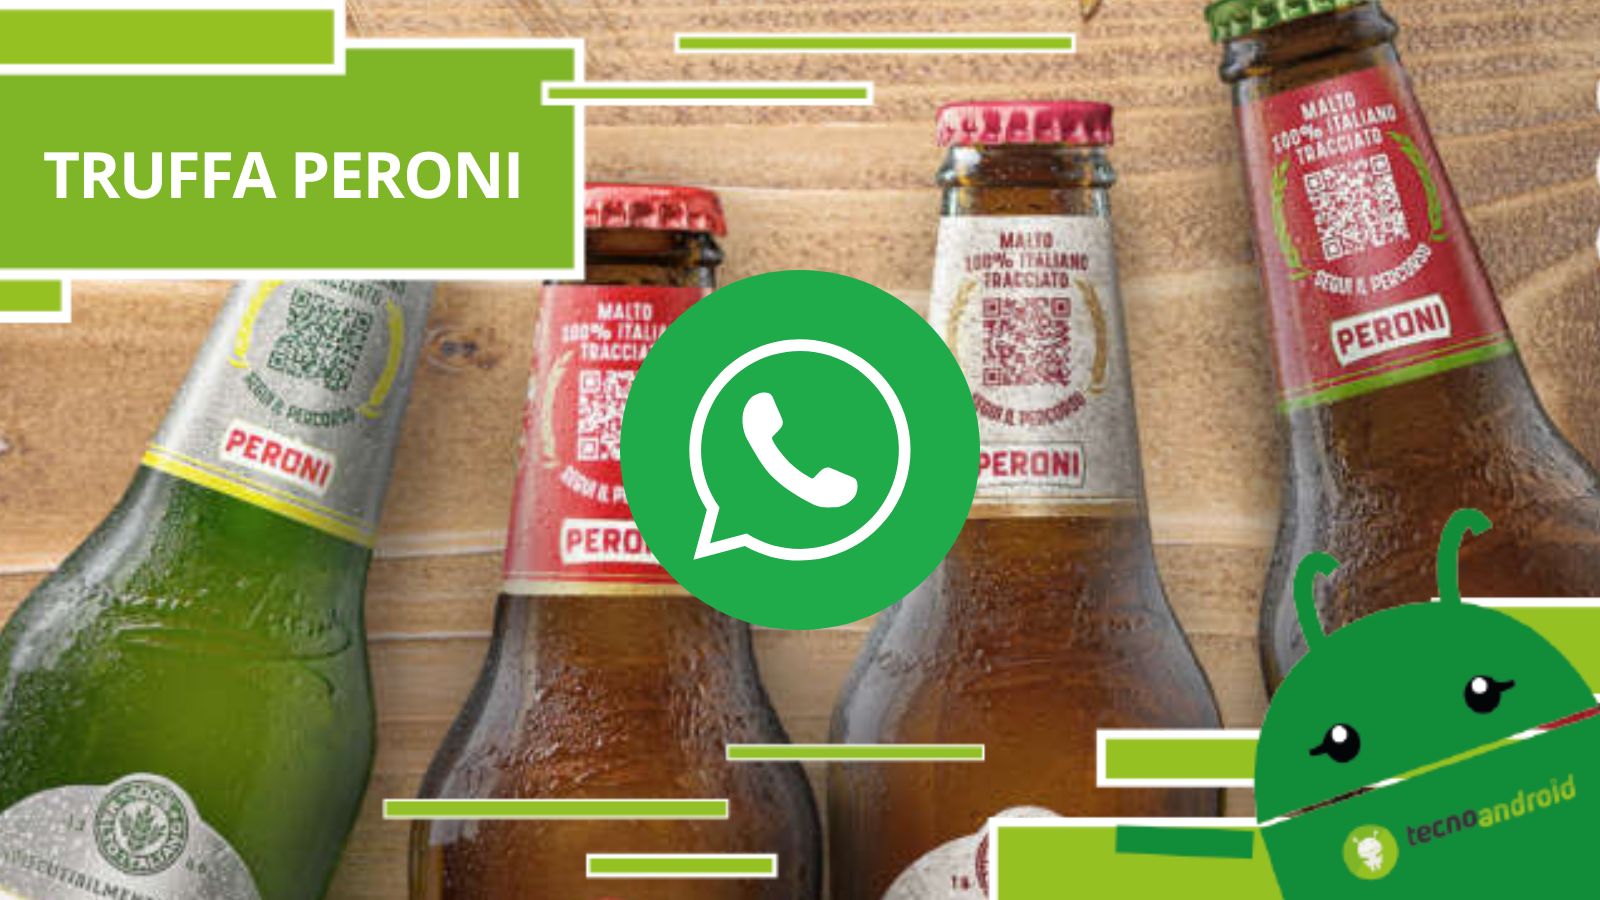 Whatsapp, è tornato il concorso che ti regala un mini frigo Peroni ma è una truffa